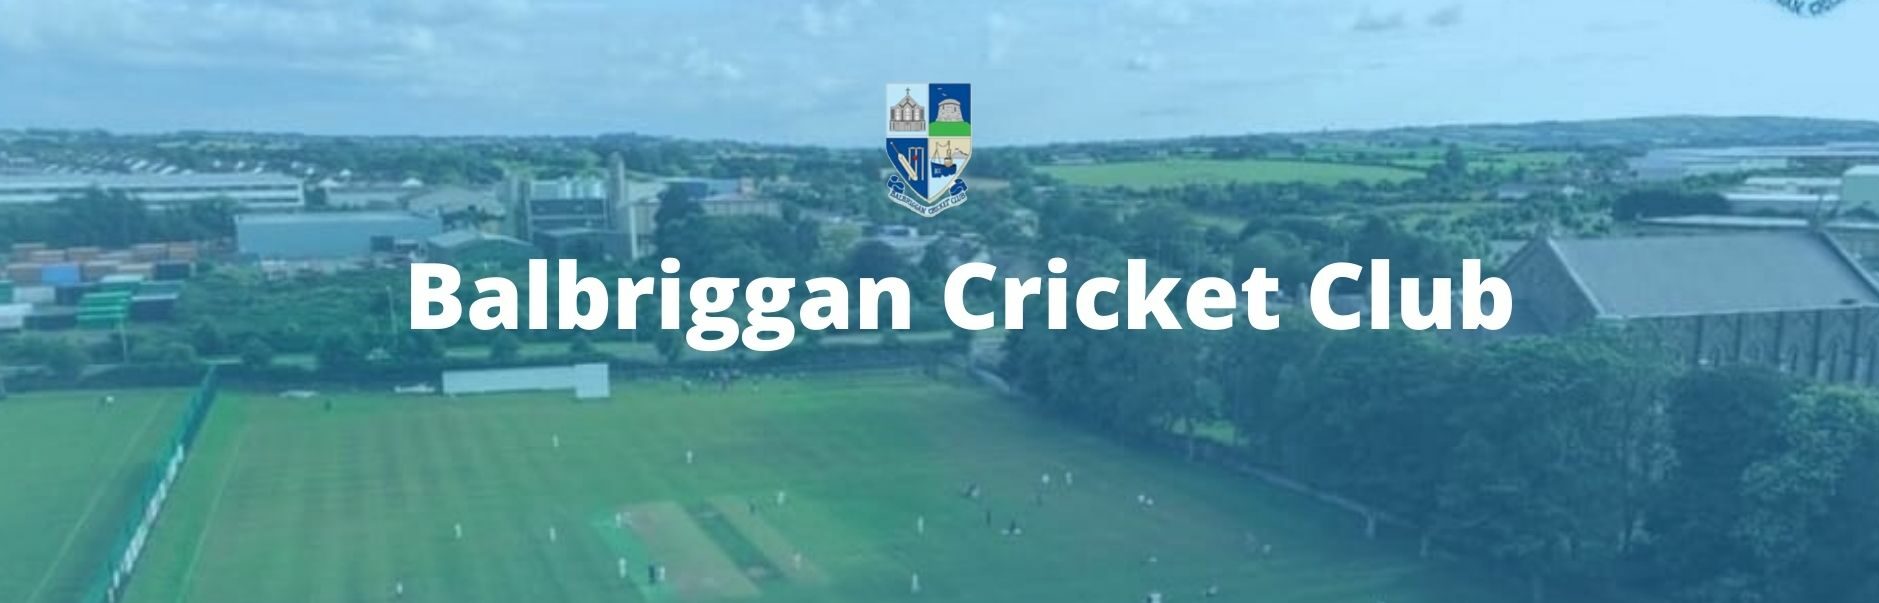 cropped-Balbriggan-Cricket-Club-2.jpg